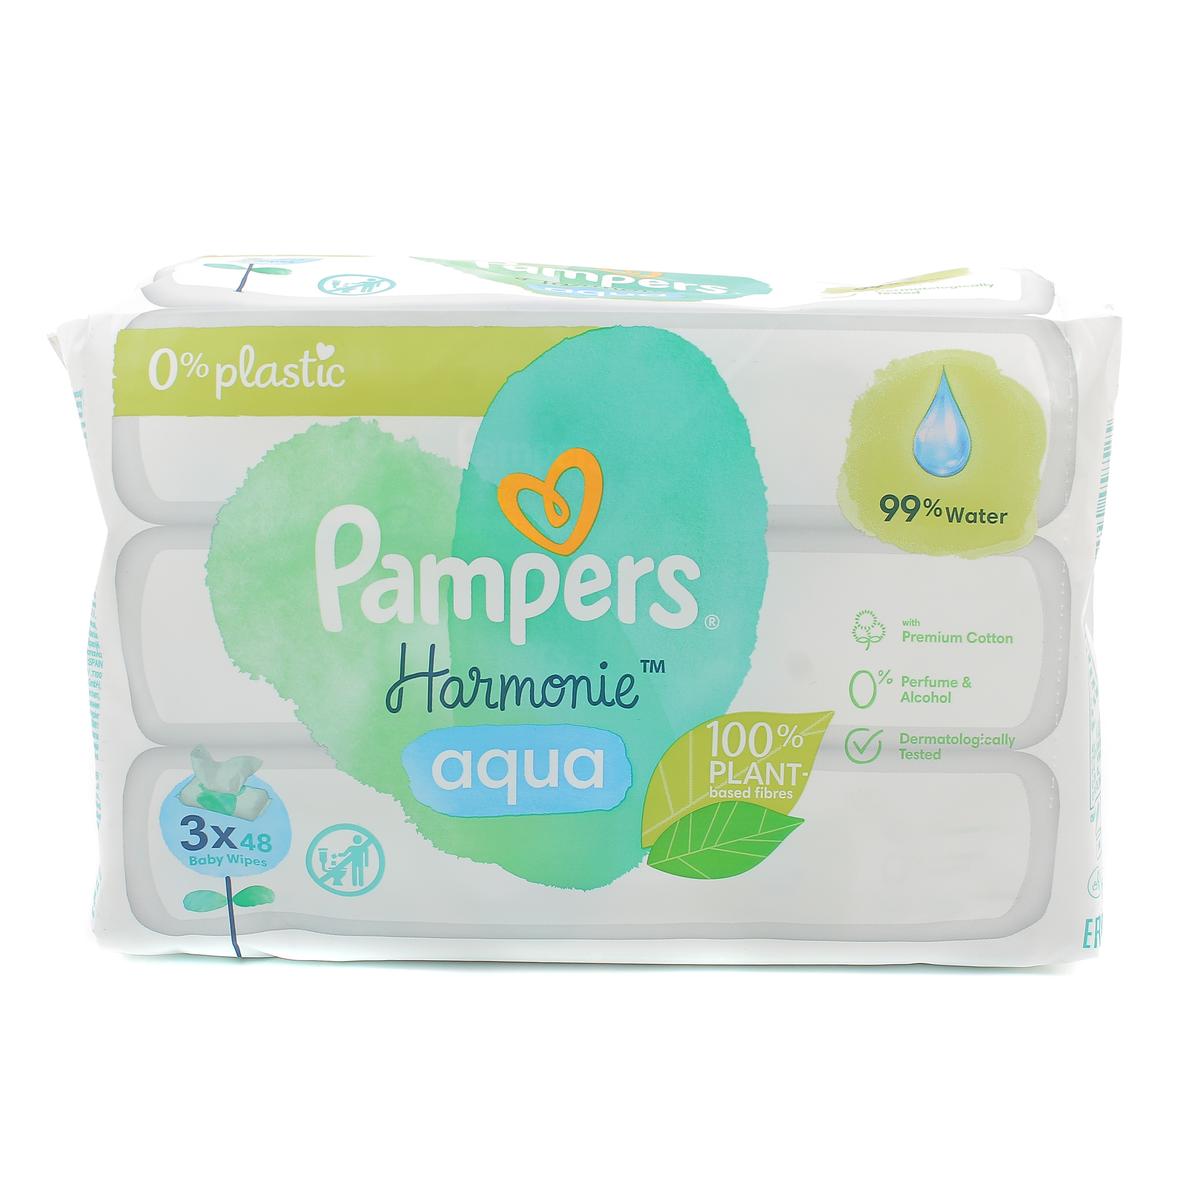 Pampers Harmonie Aqua - Lingettes pour bébé sans plastique